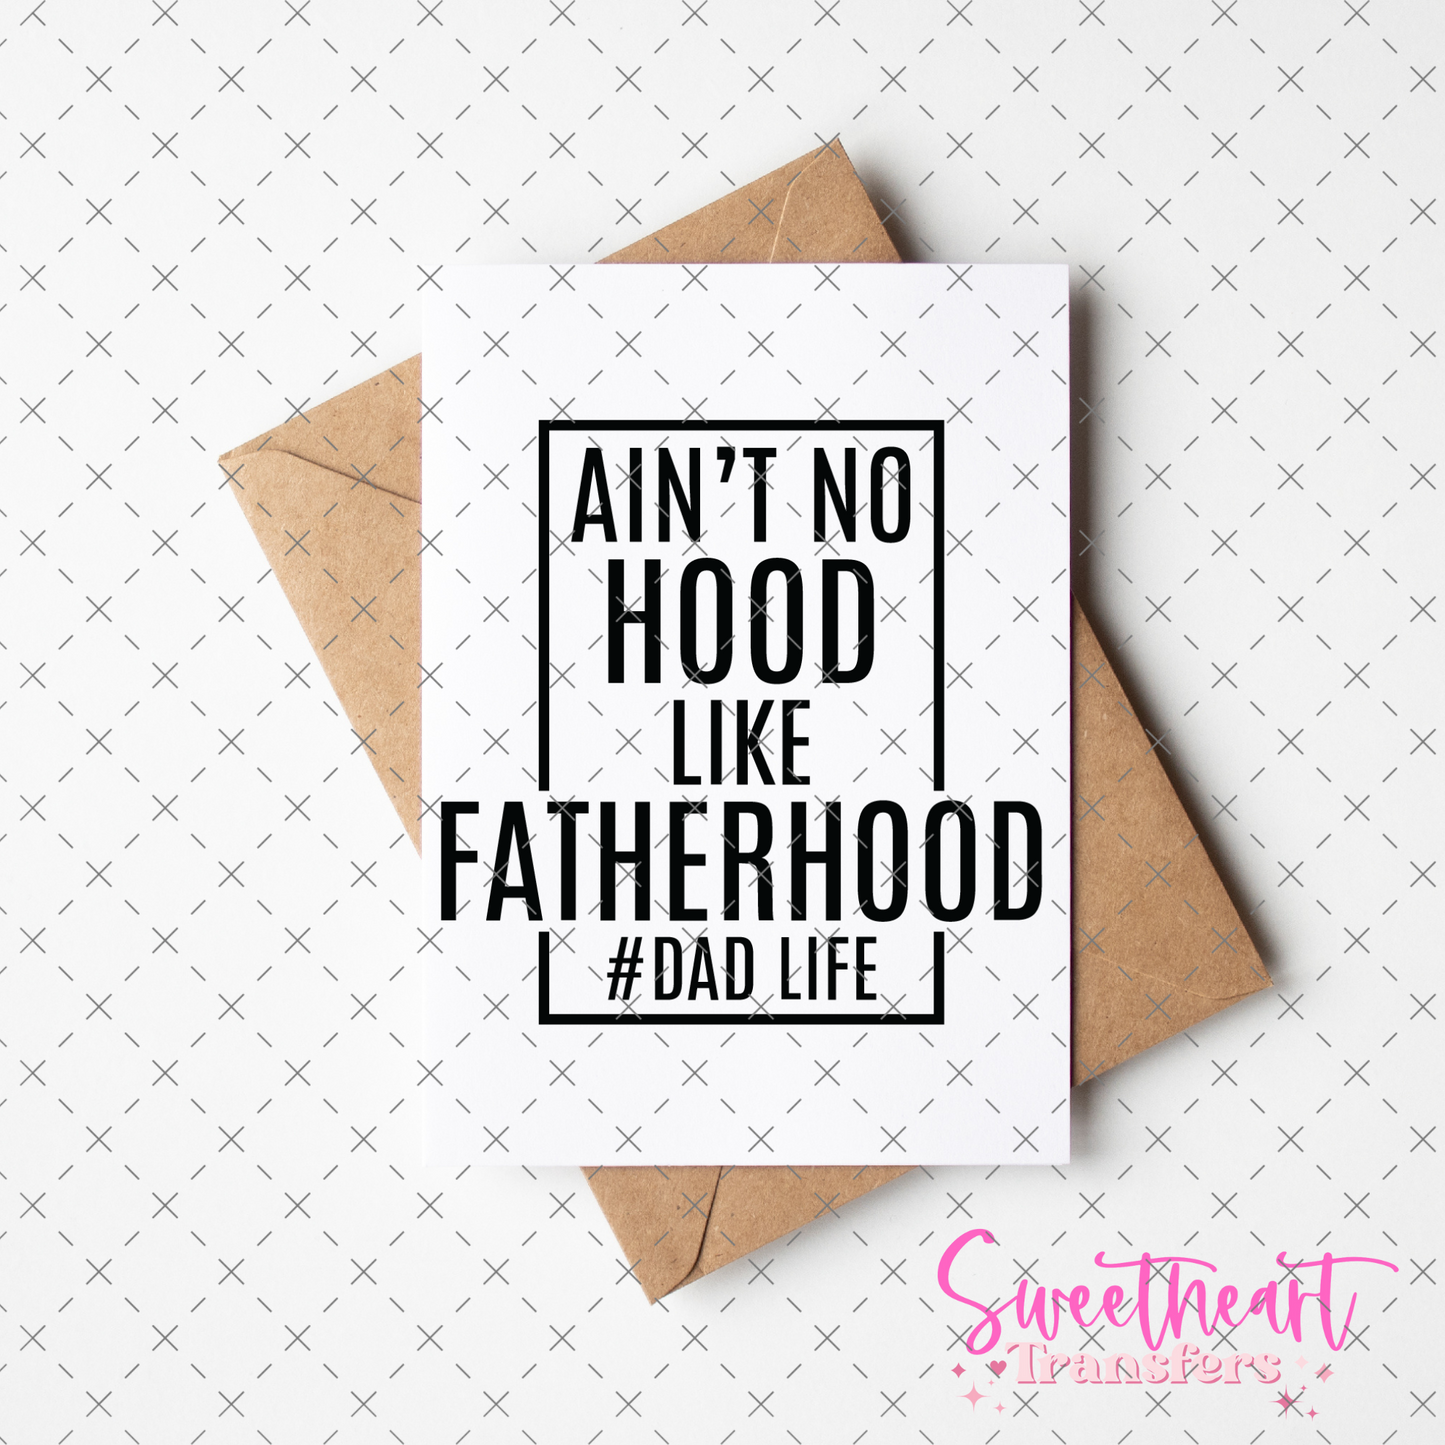 SUBLIMATION- Aint No Hood Like Fatherhood